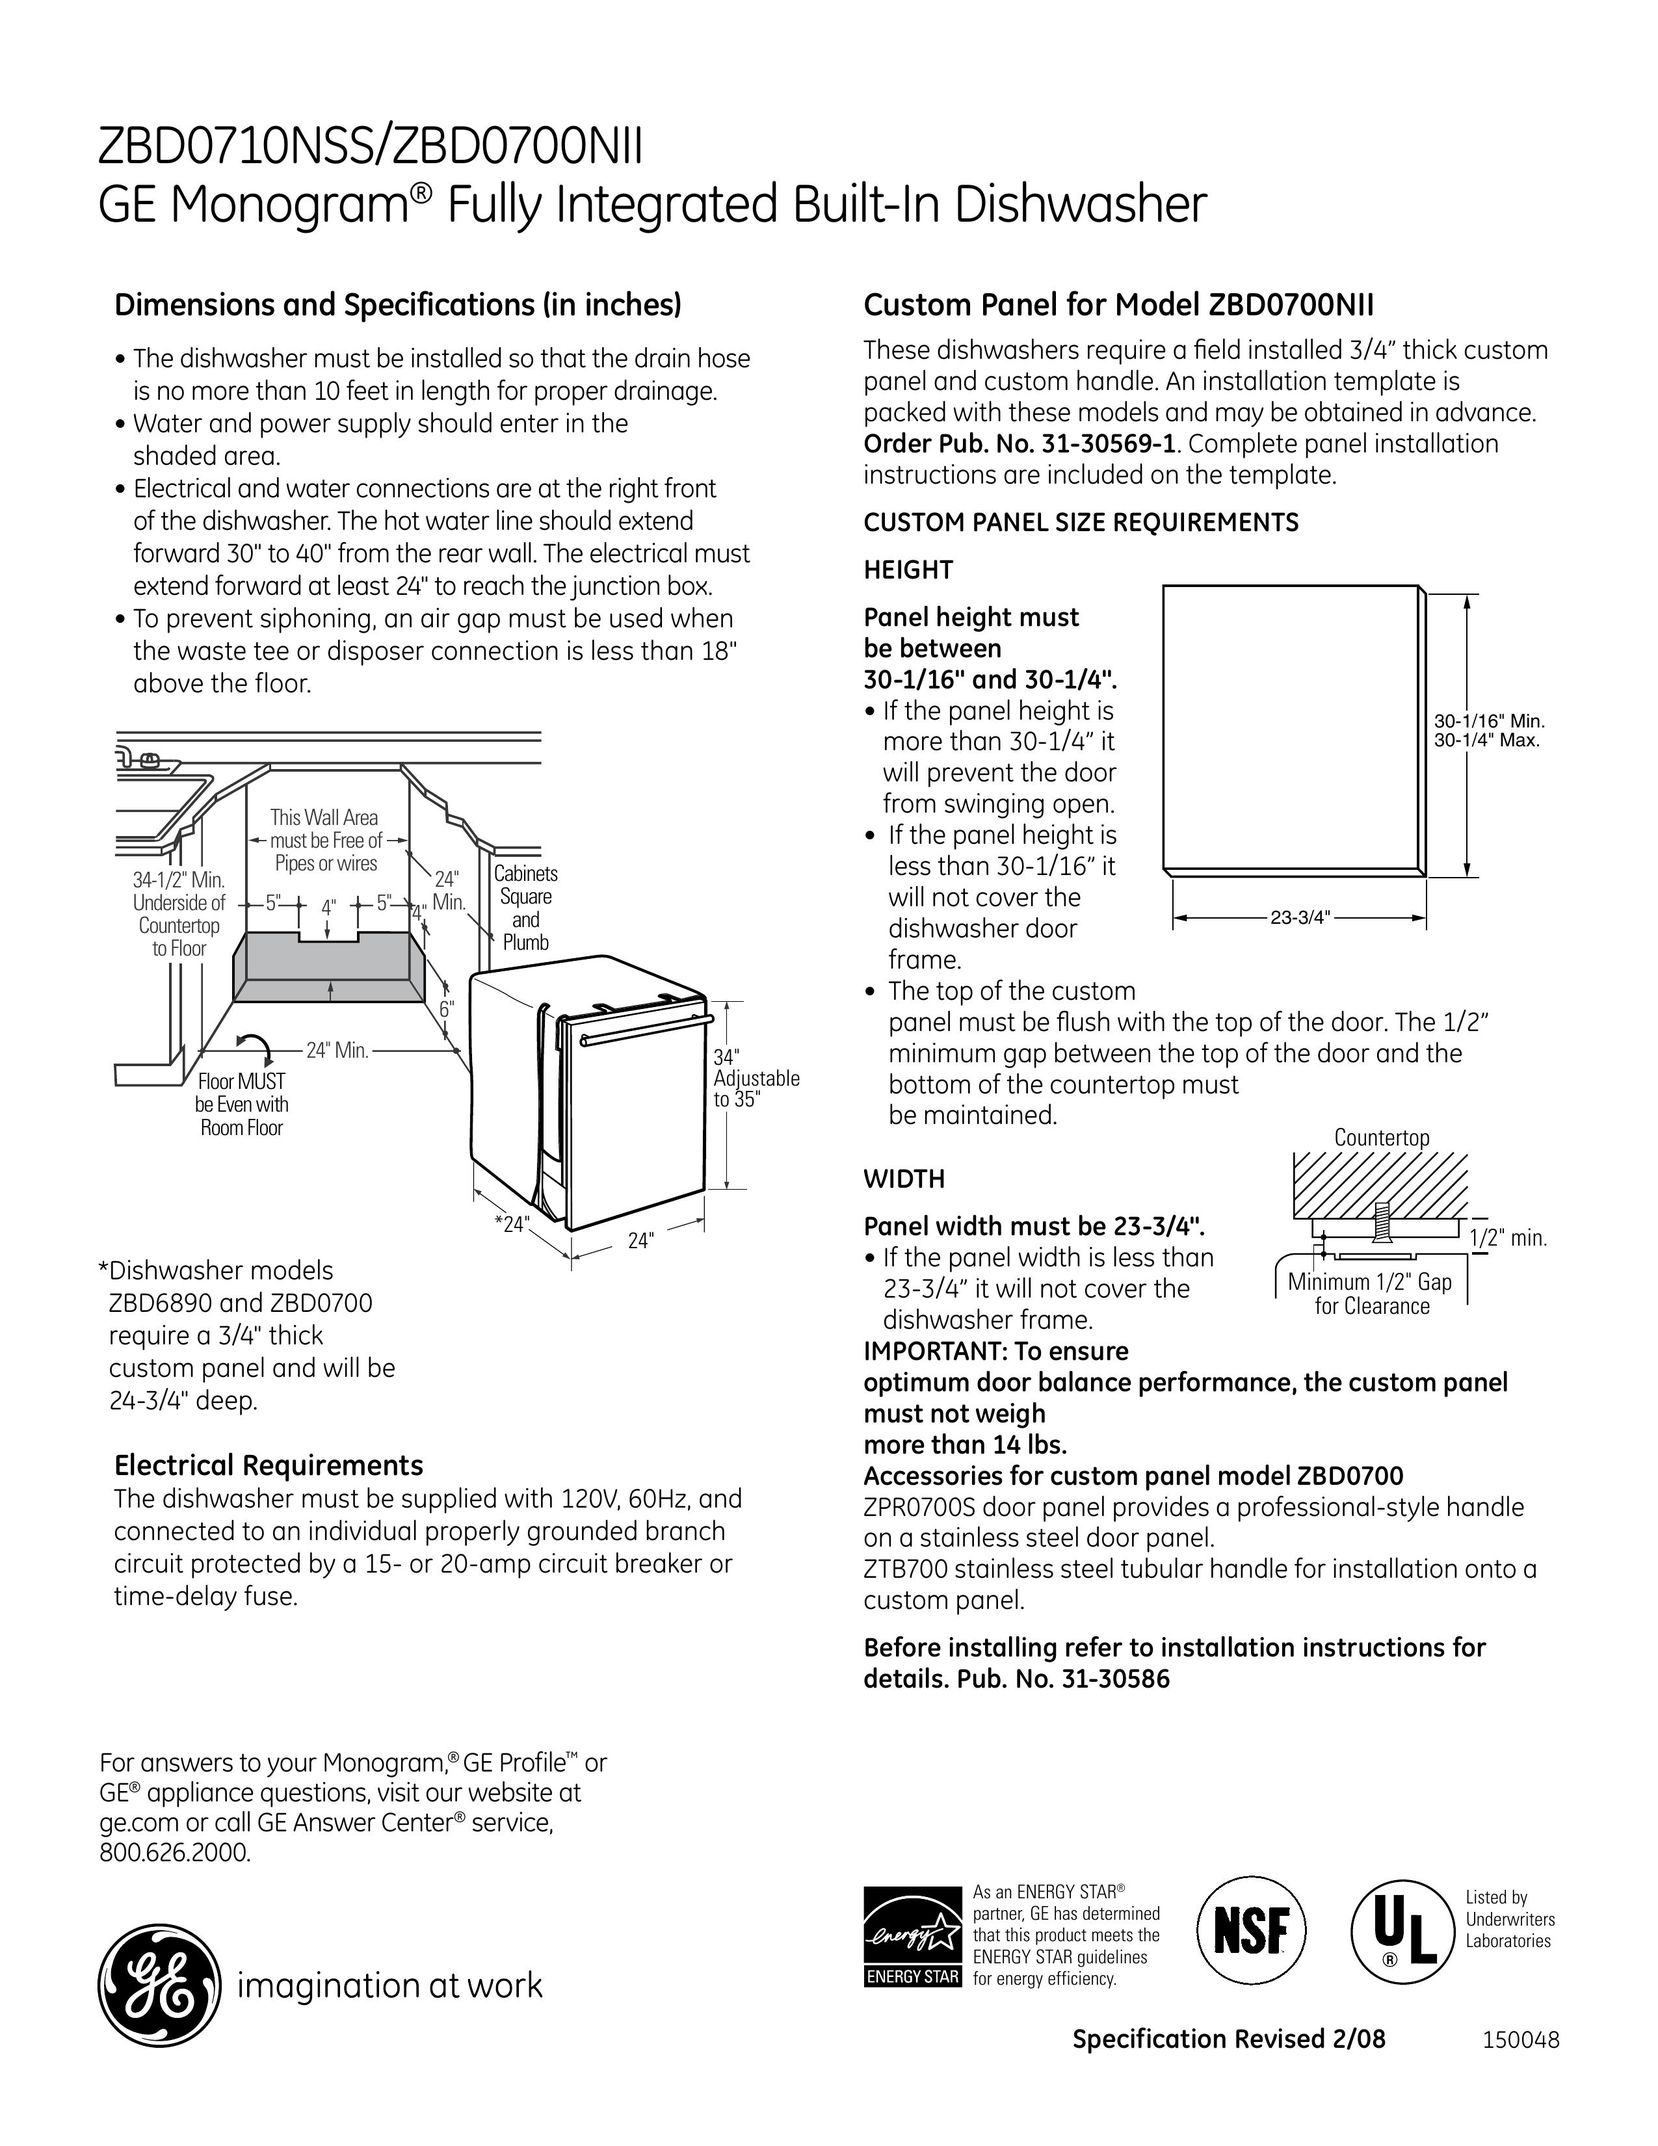 GE Monogram ZBd0710NSS Dishwasher User Manual